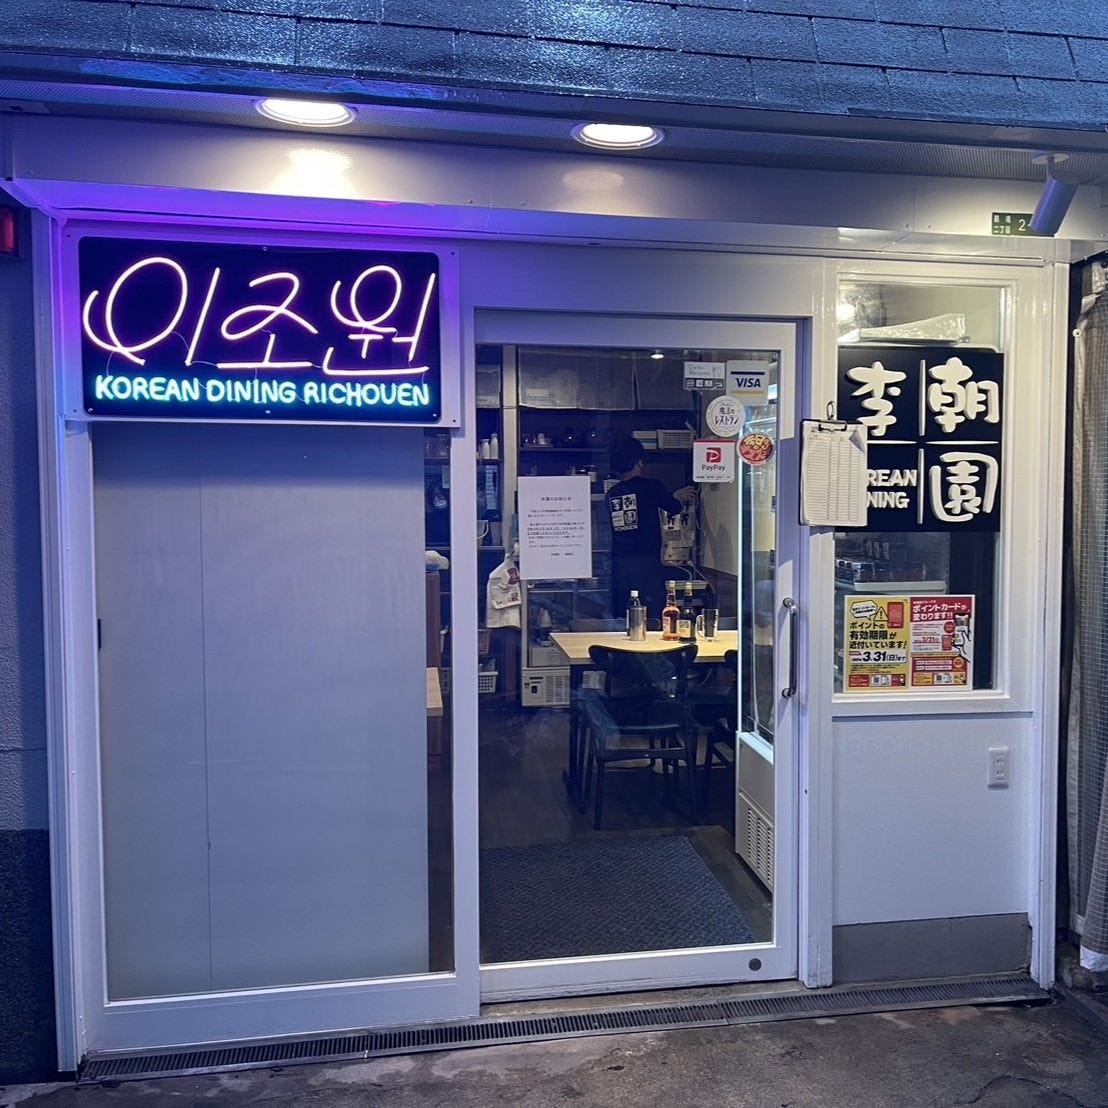 サムギョプサル 韓国料理 李朝園 鶴橋店